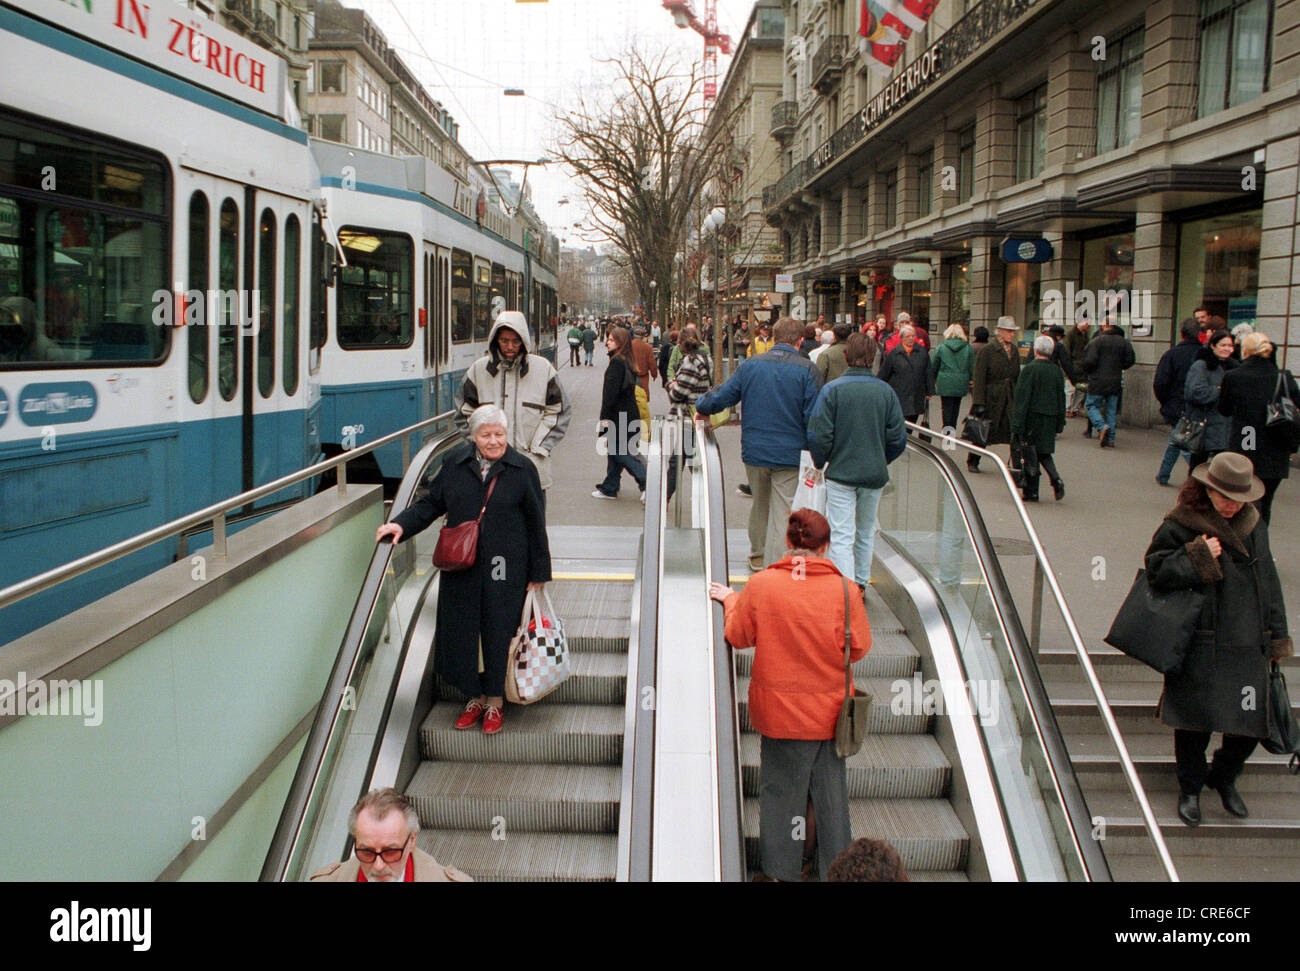 Menschen in einer Fußgängerzone mit einem vorbeifahrenden Straßenbahnen,  Zürich, Schweiz Stockfotografie - Alamy